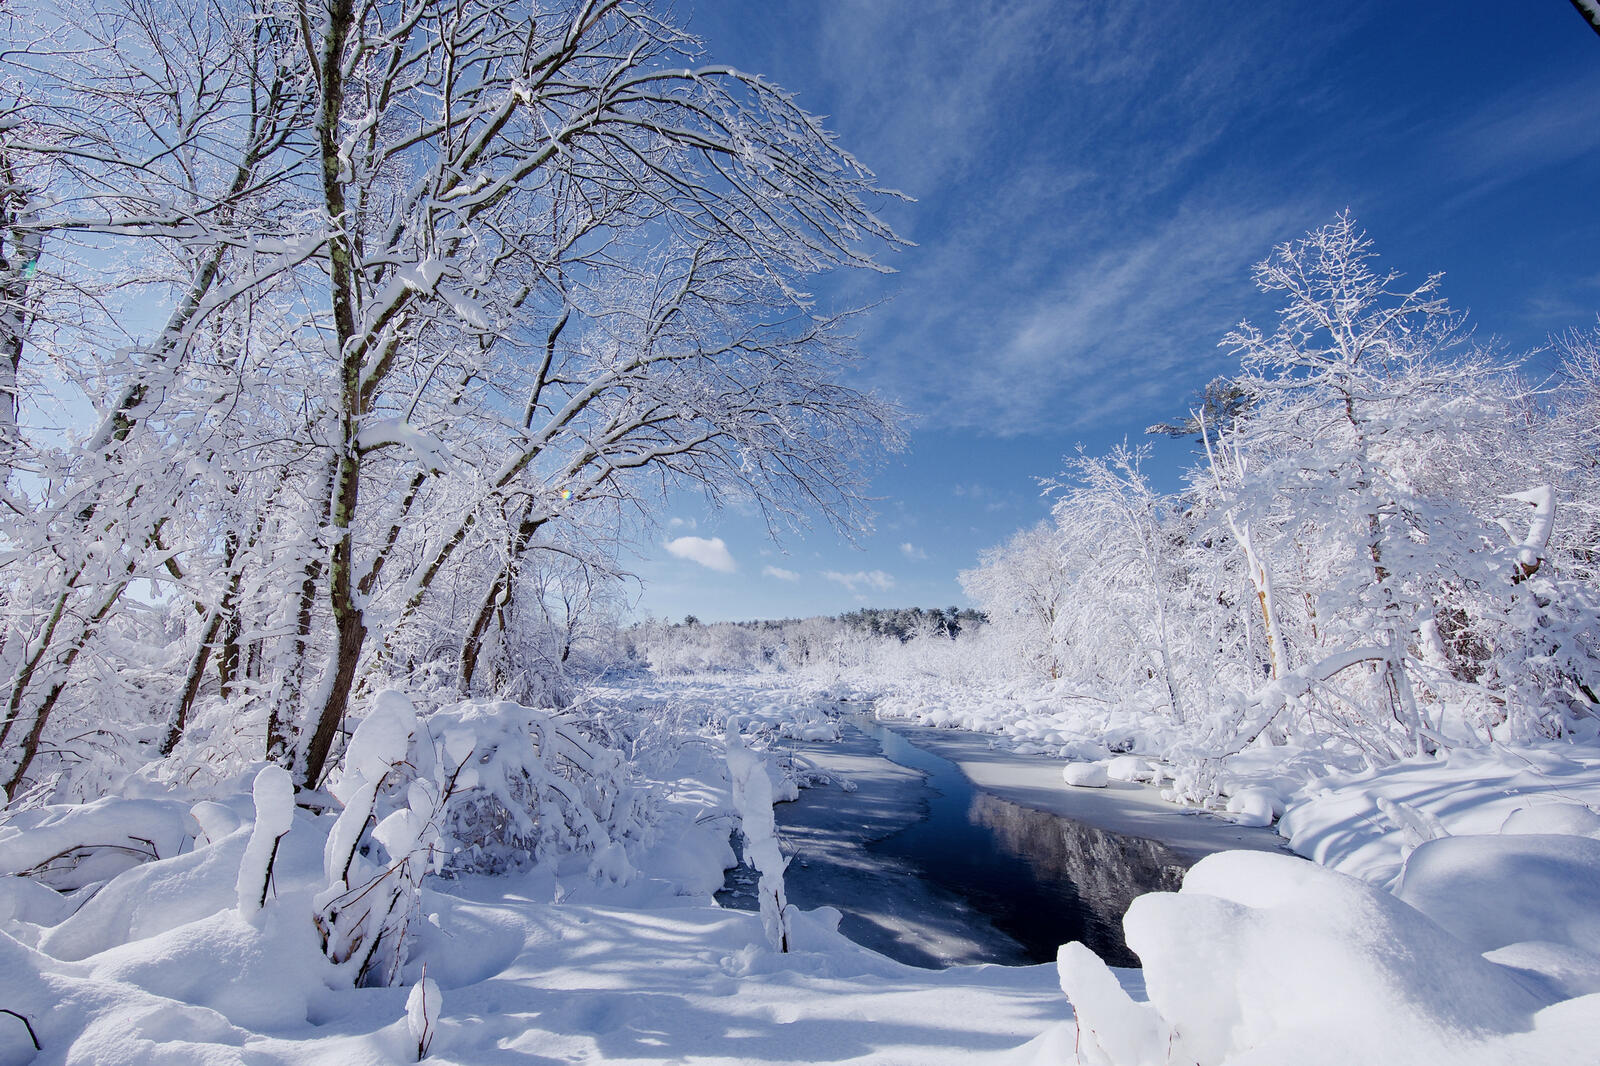 Обои на рабочий стол зима природа. Февраль фото природы. Пейзаж зима река. Зима сугробы.